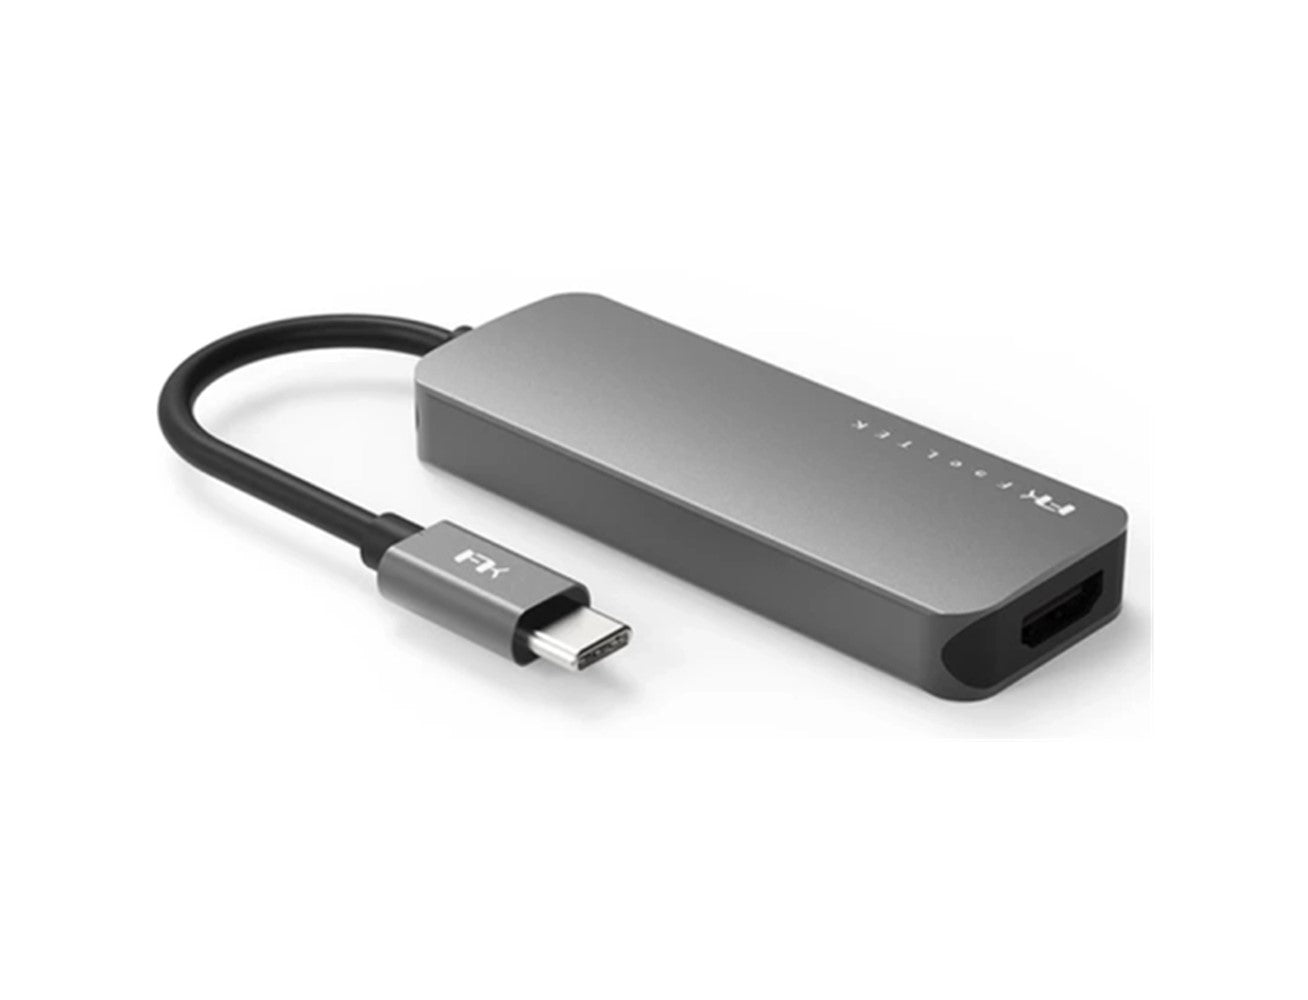 Feeltek 4-in-1 Portable USB Type C Hub